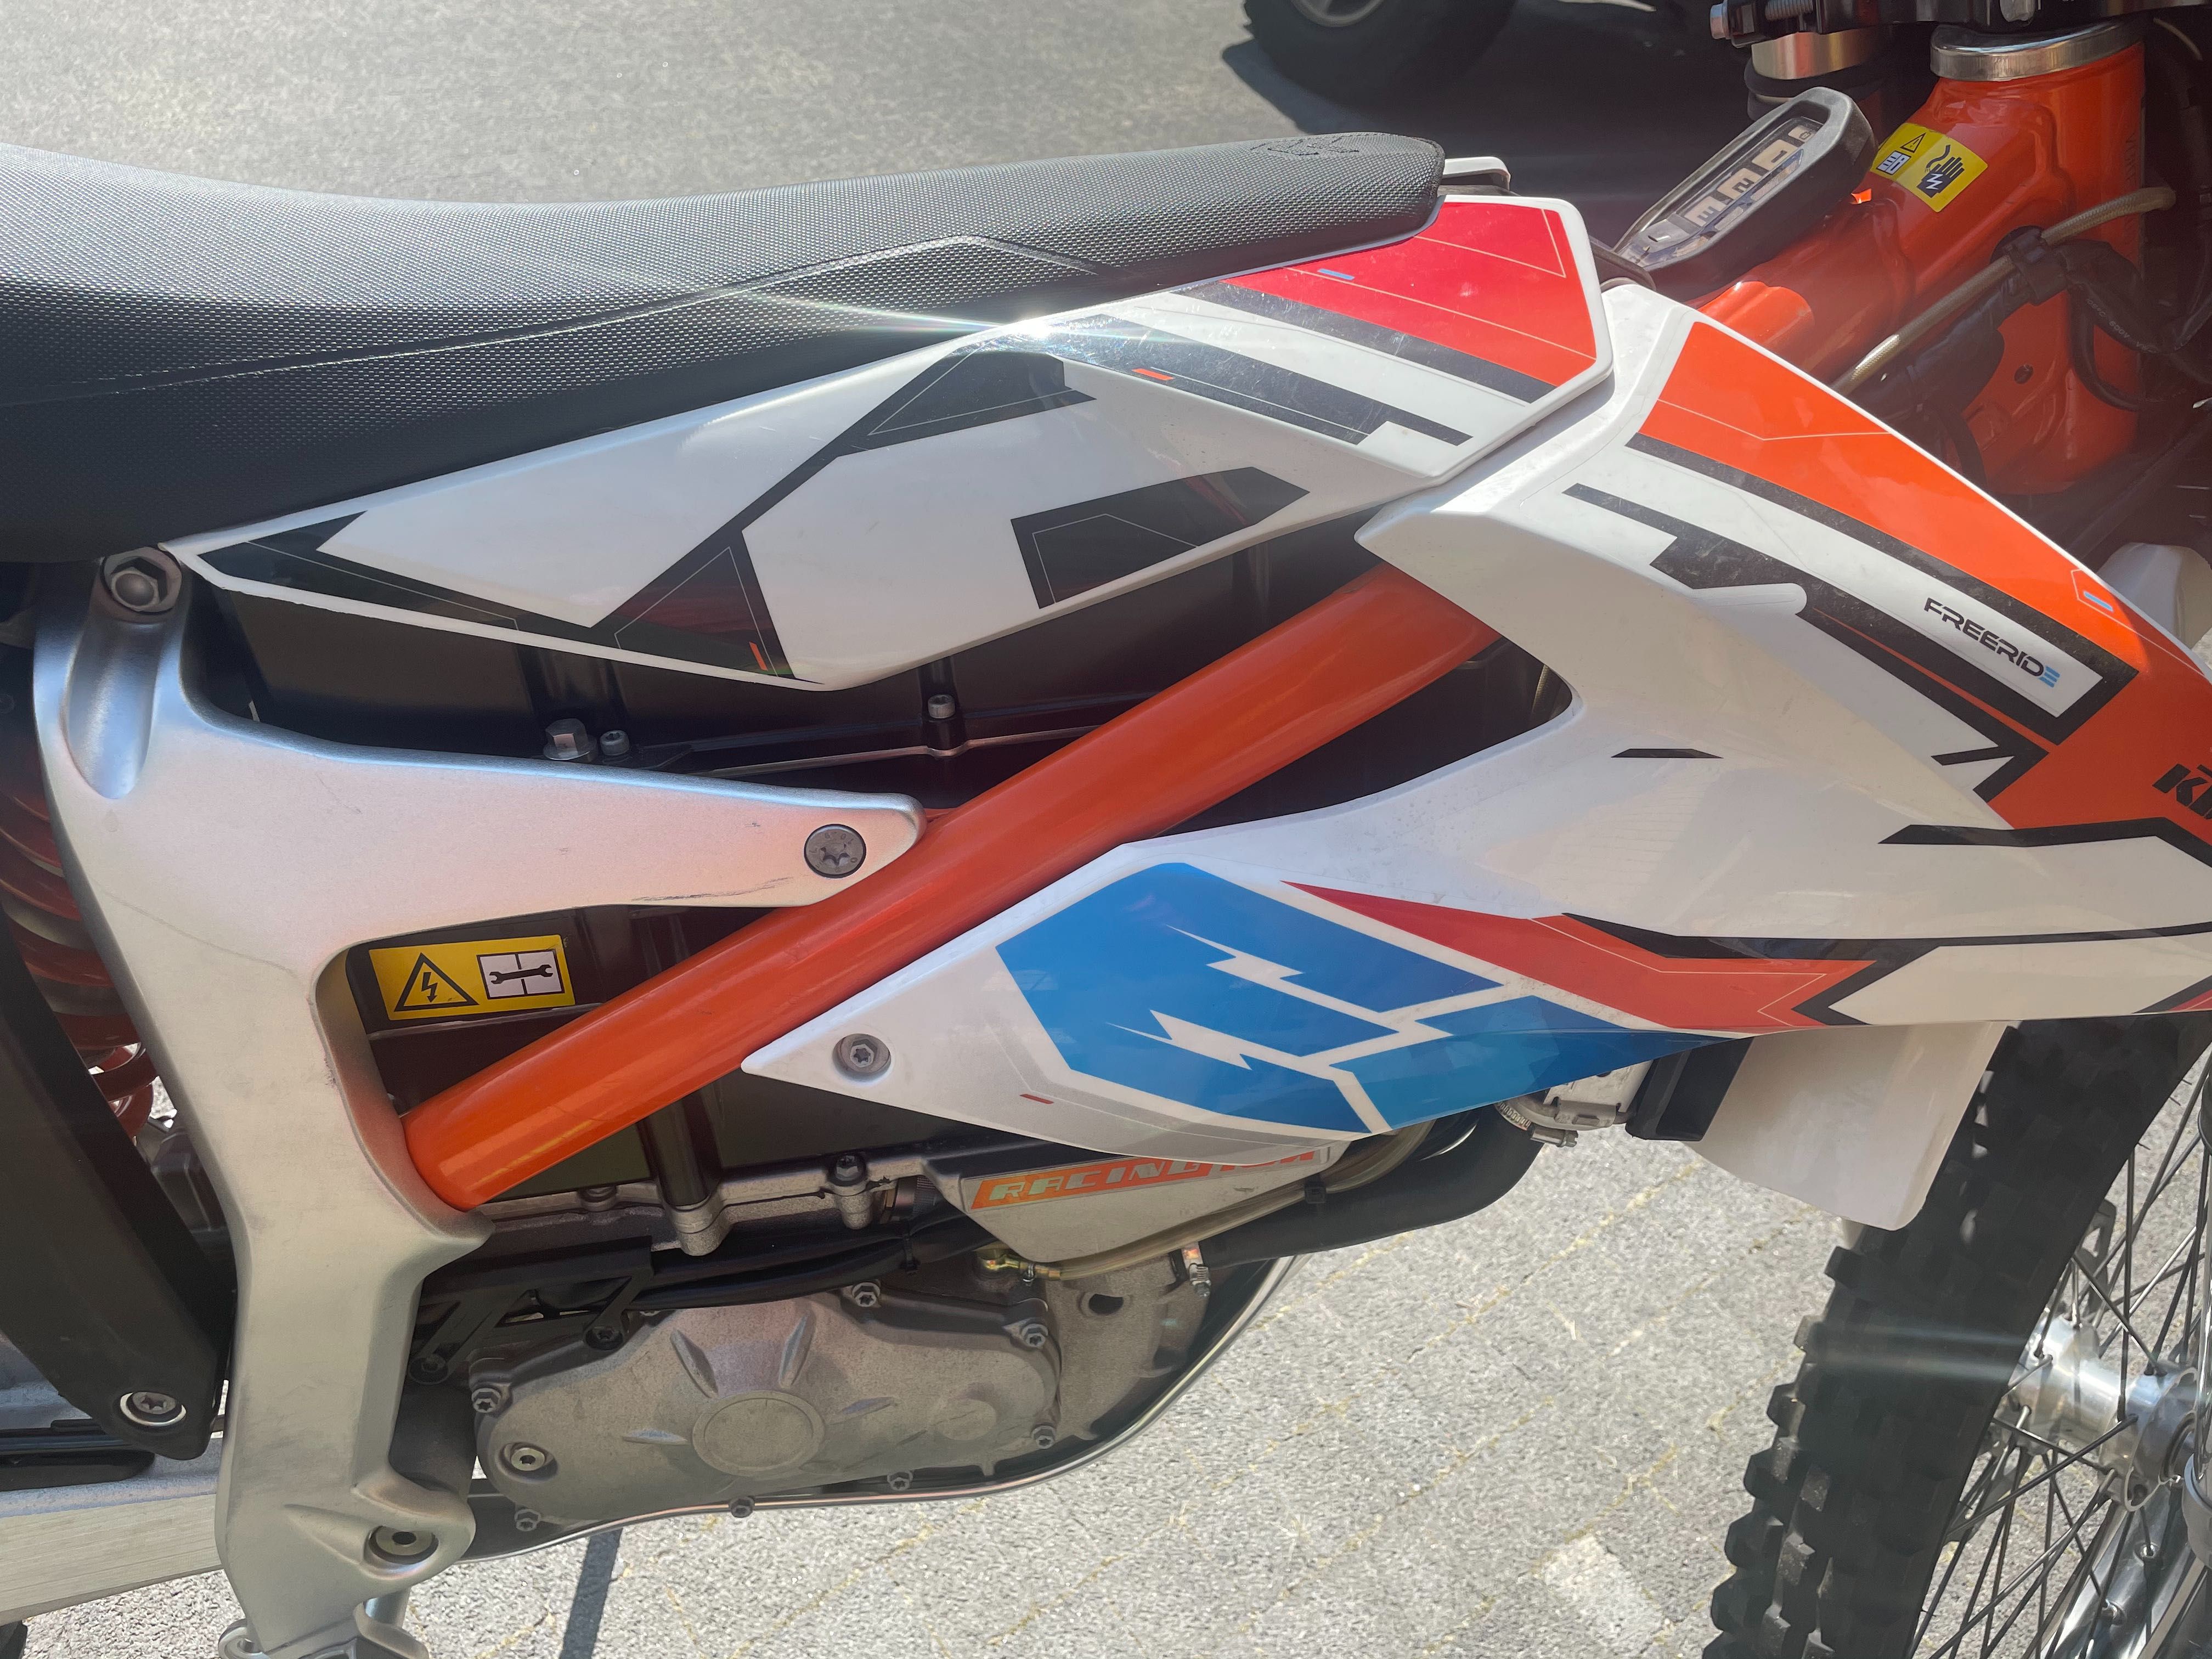 KTM E-XC freeride moto elektryczny faktura VAT